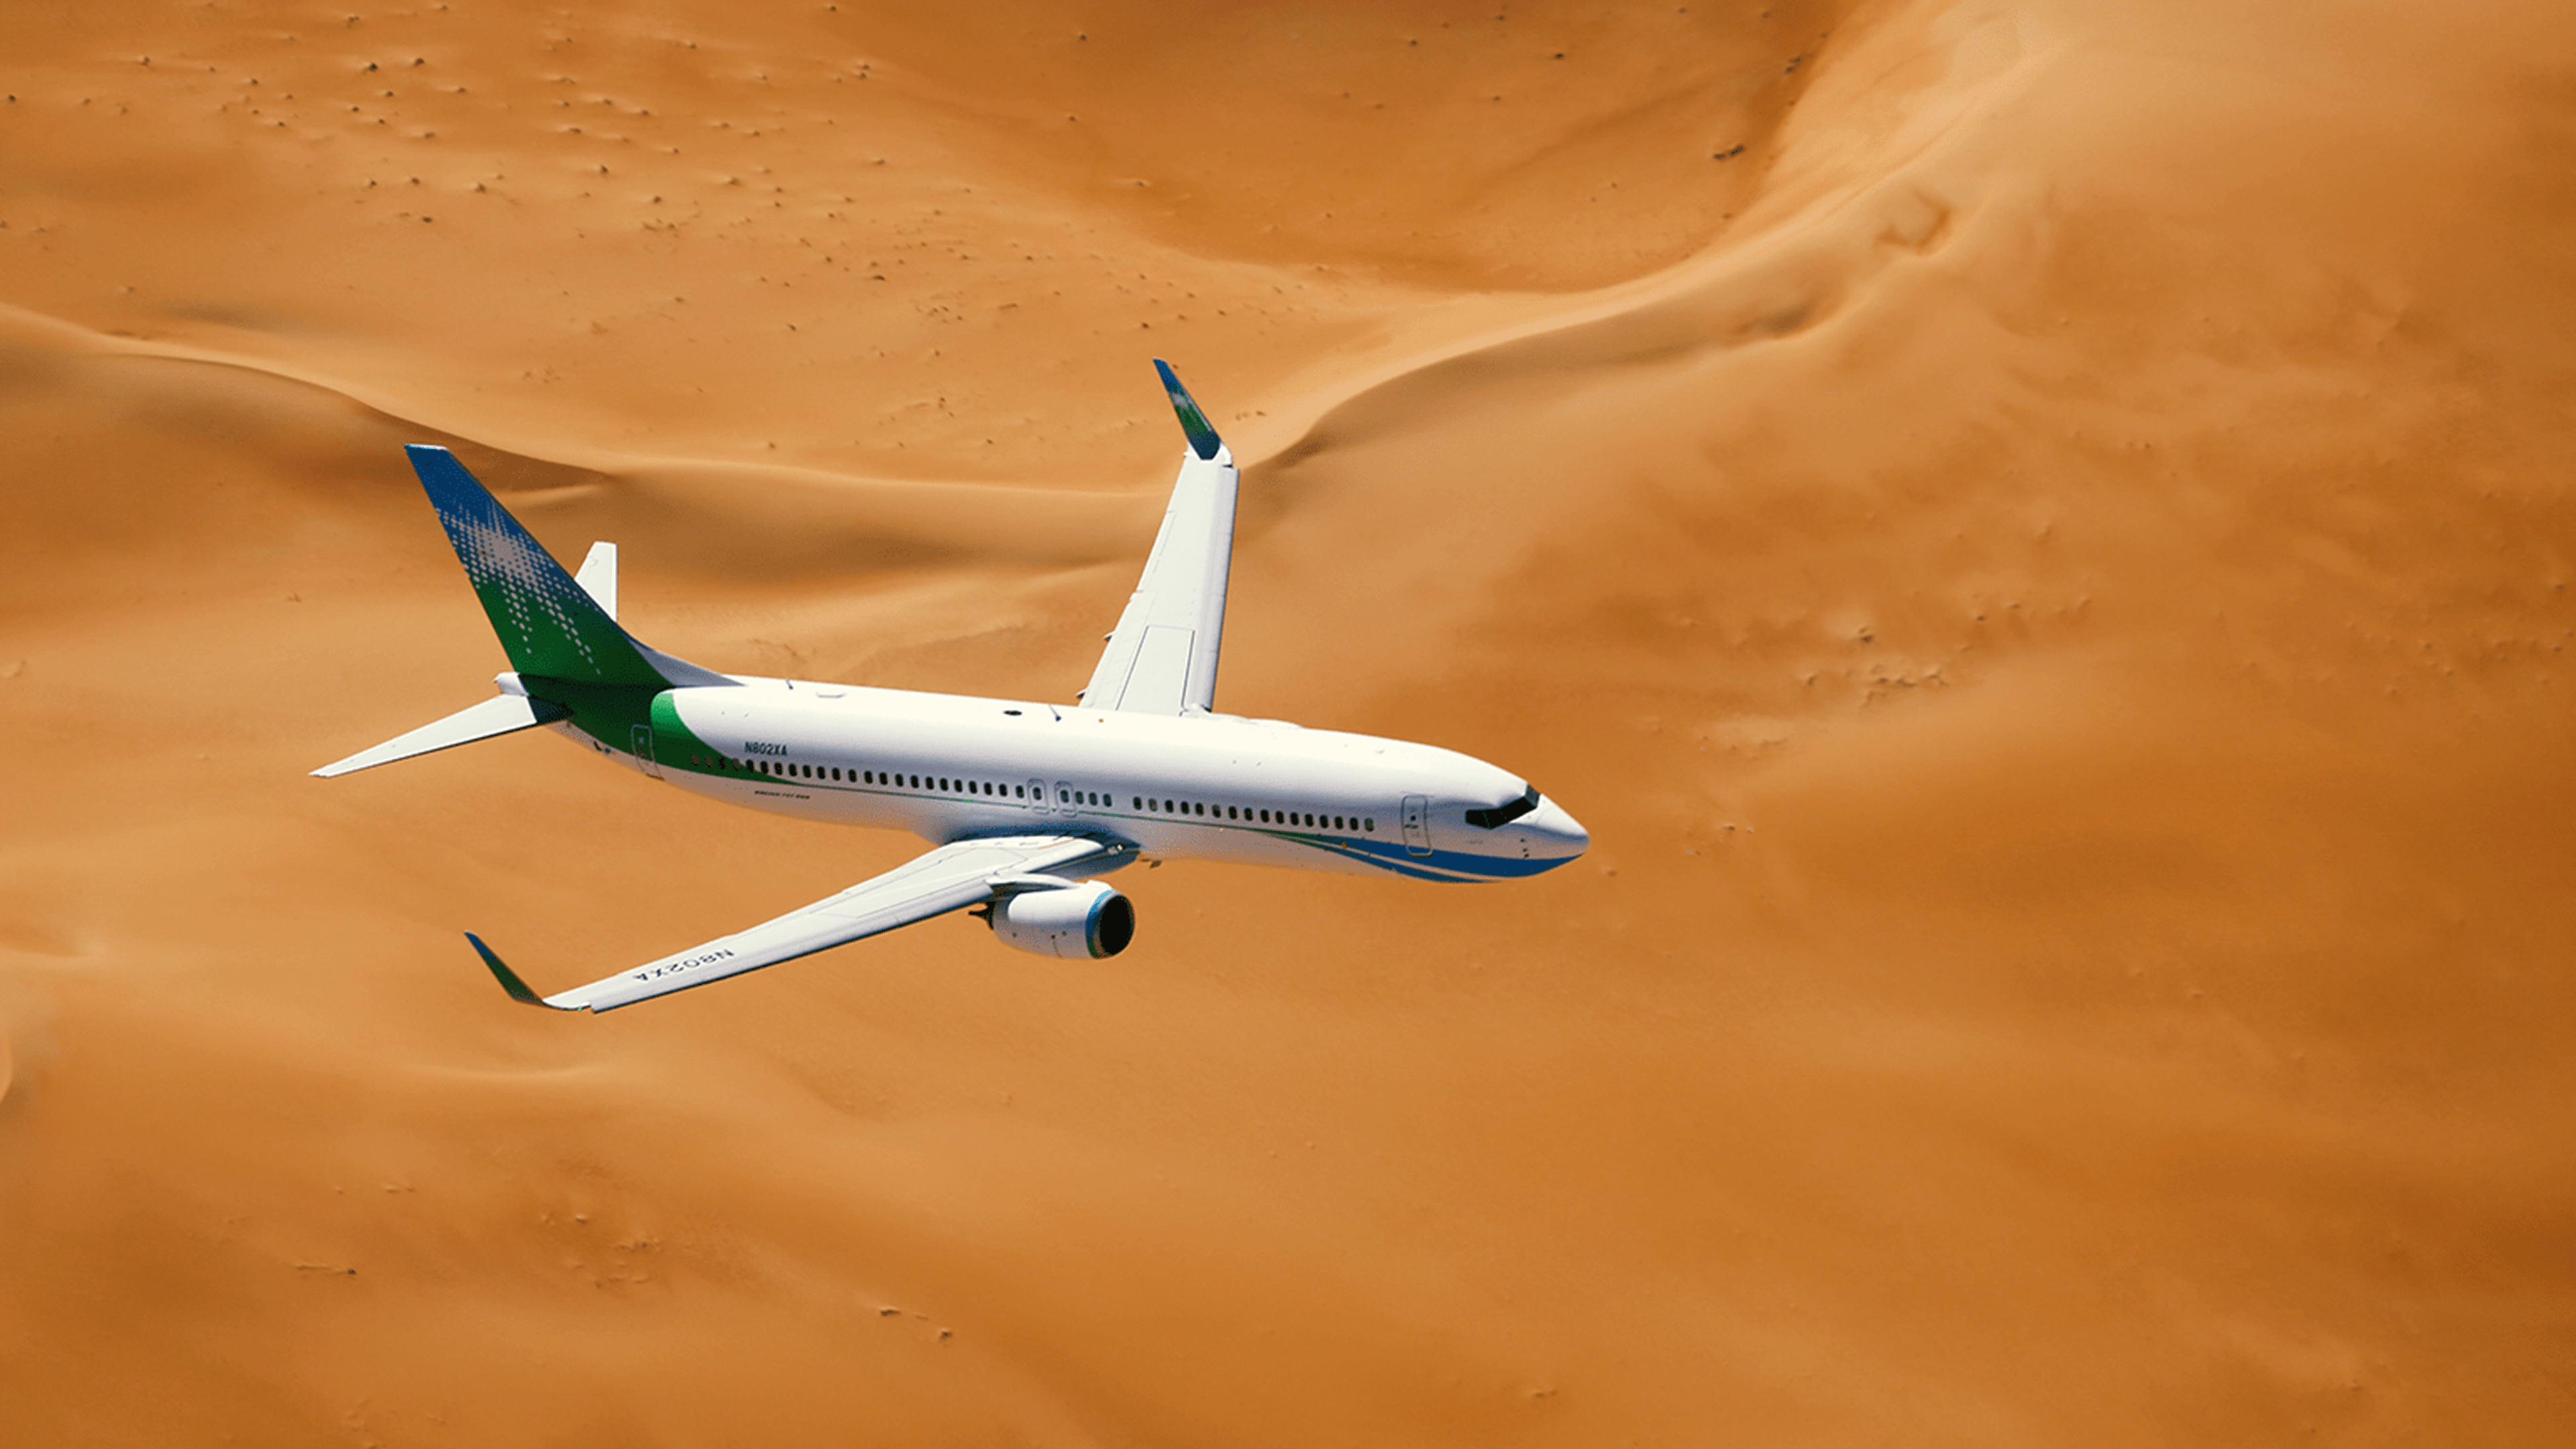 Saudi Aramco (Mukamalah) airplane flying through the sandy Arabian golden desert